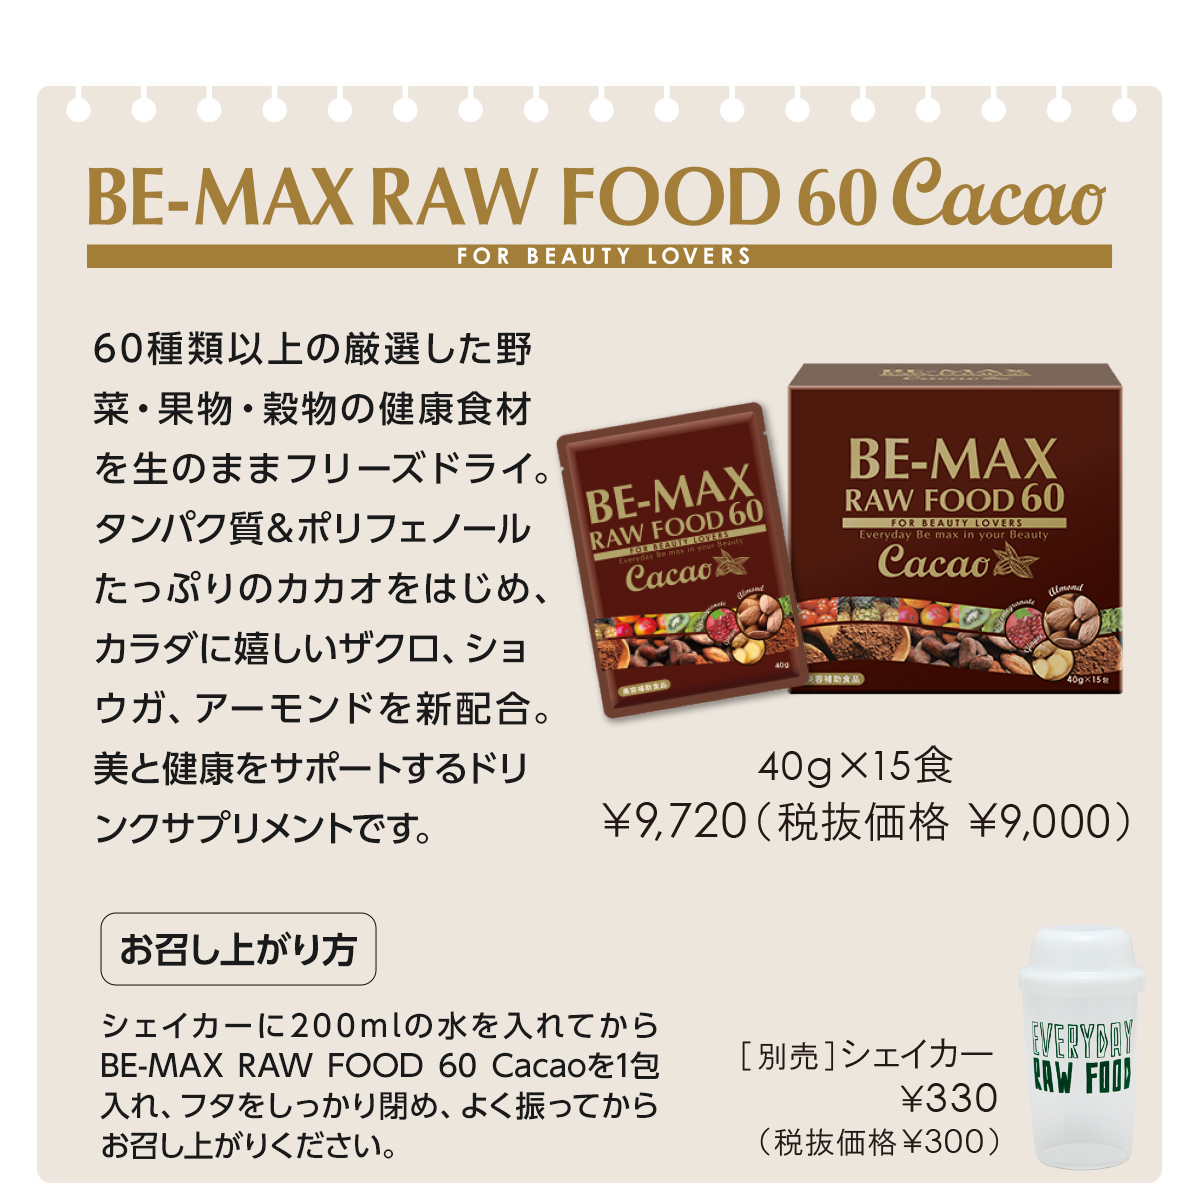 【リニューアル発売記念】BE-MAX RAW FOOD 60 Cacao １箱ご購入で３包プレゼント